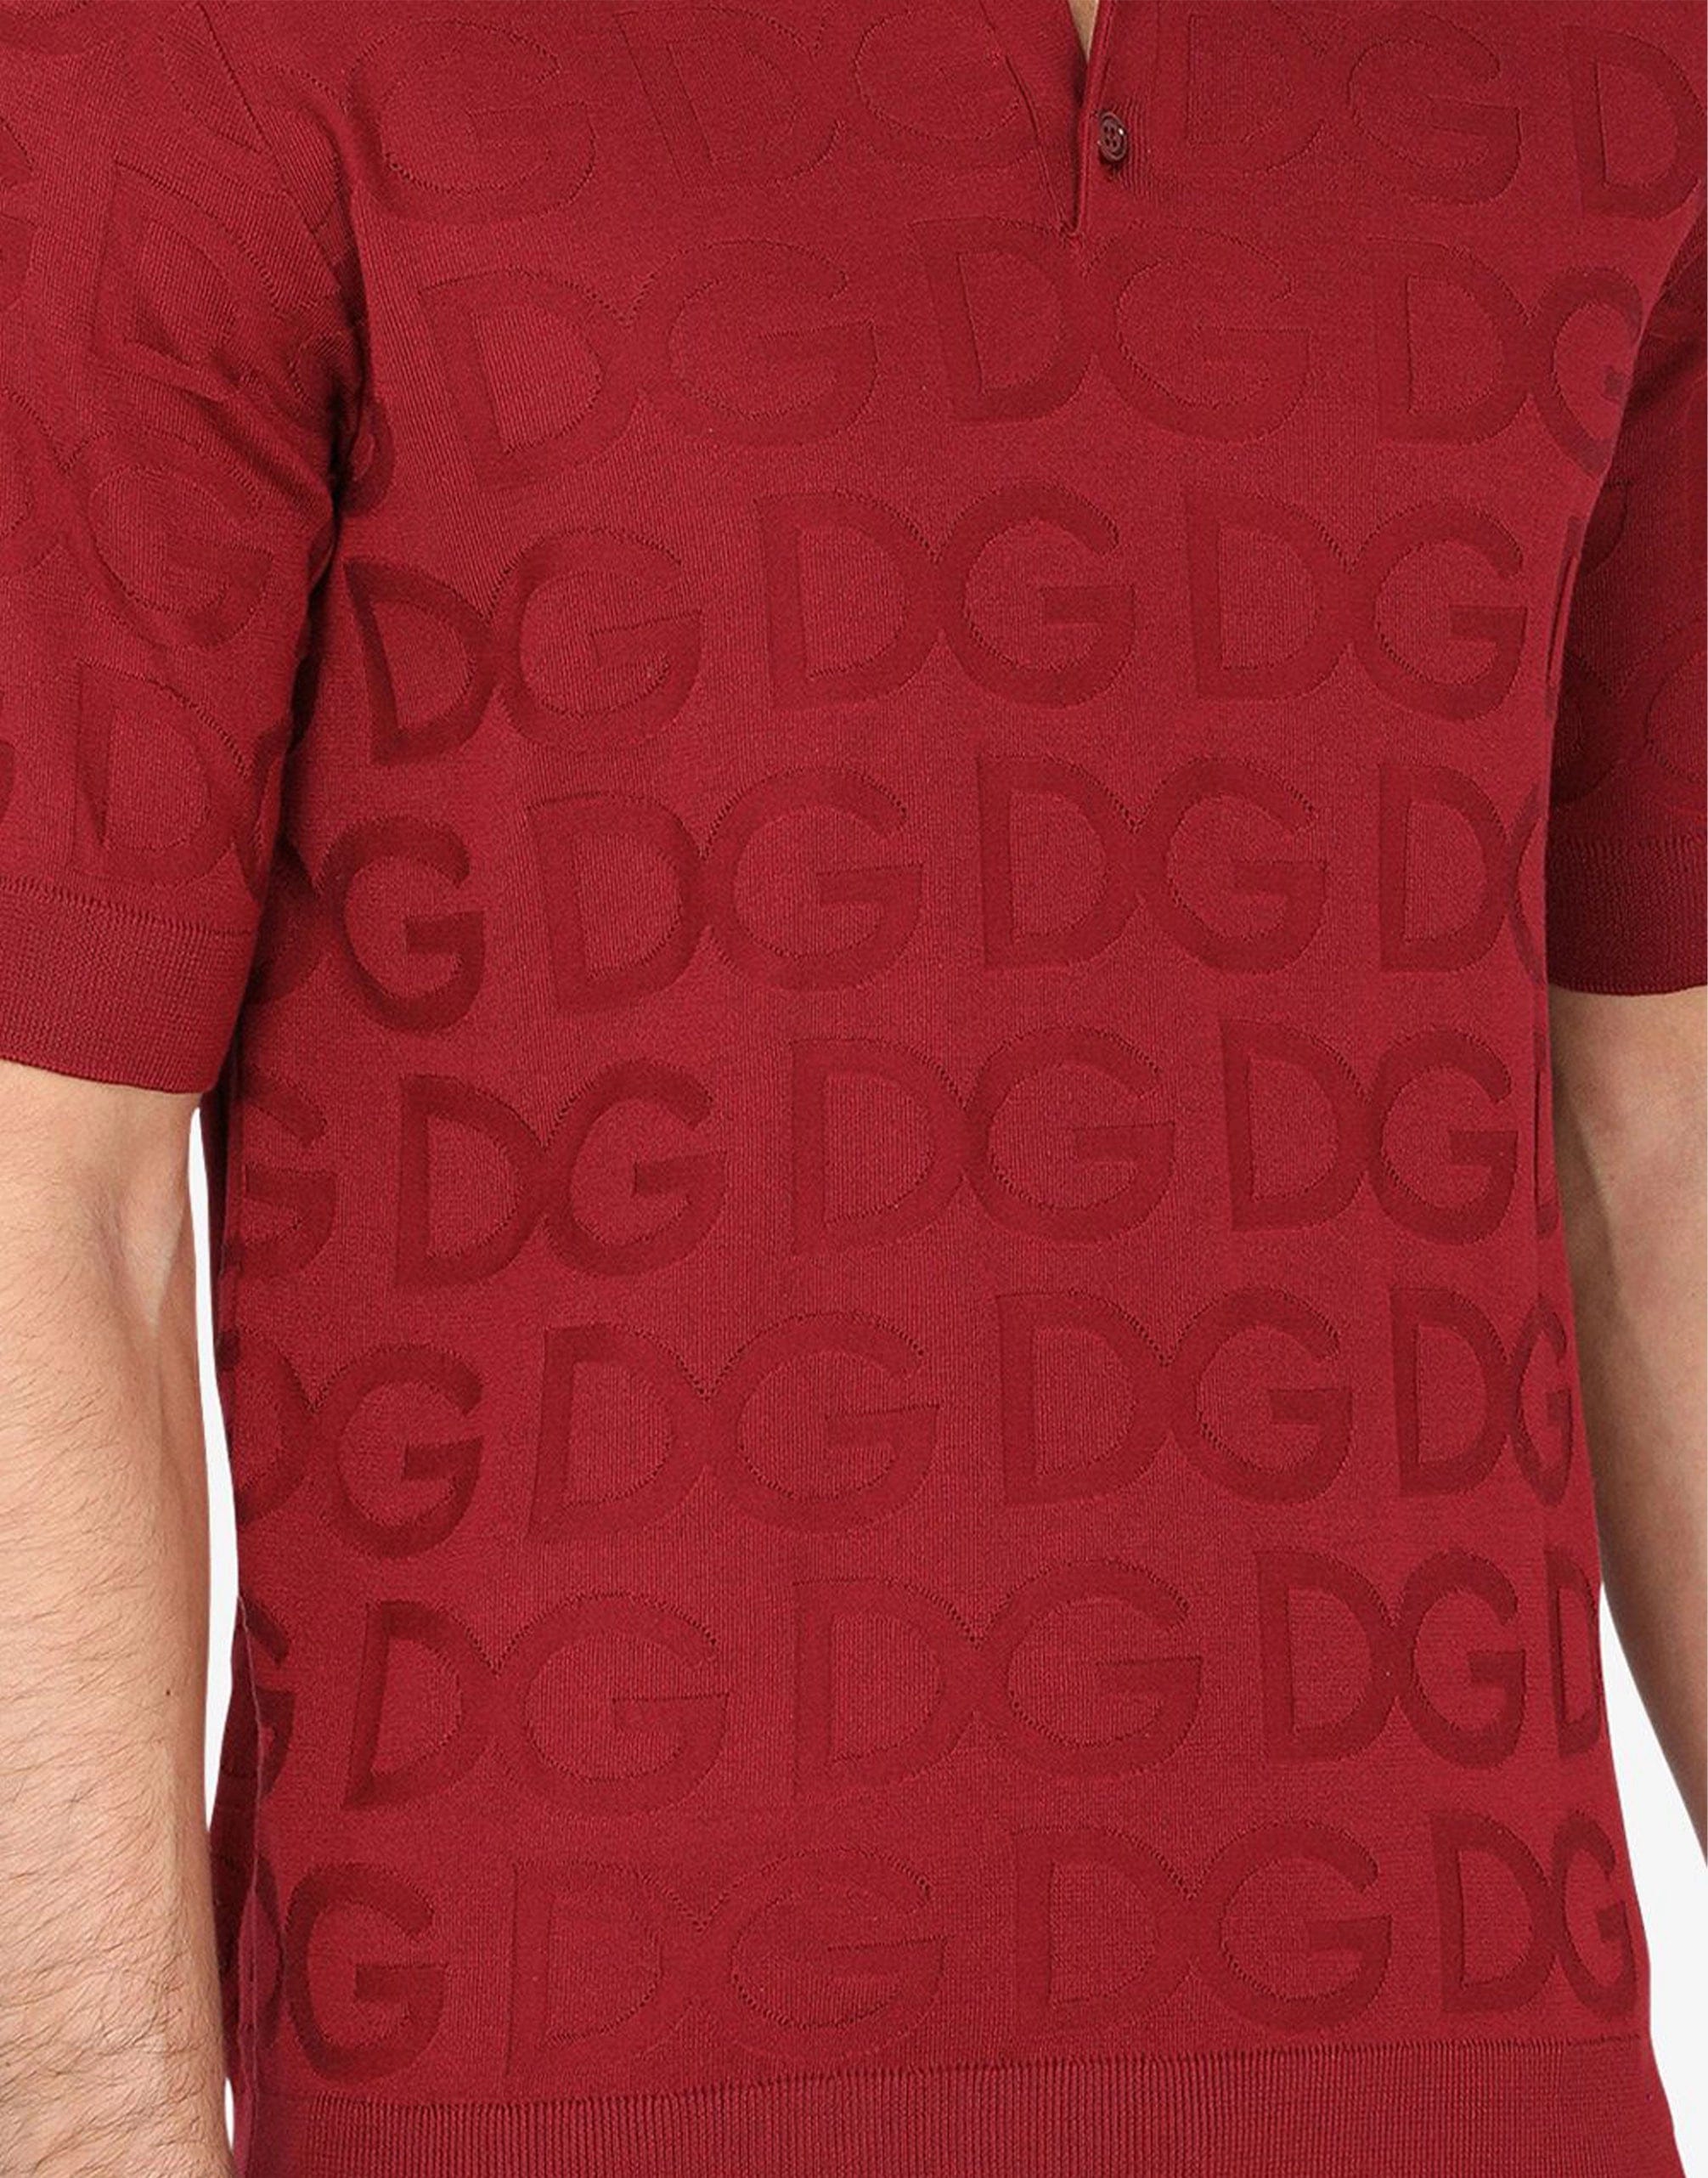 Dolce & Gabbana Logo-Jacquard Short-Sleeve Polo Shirt